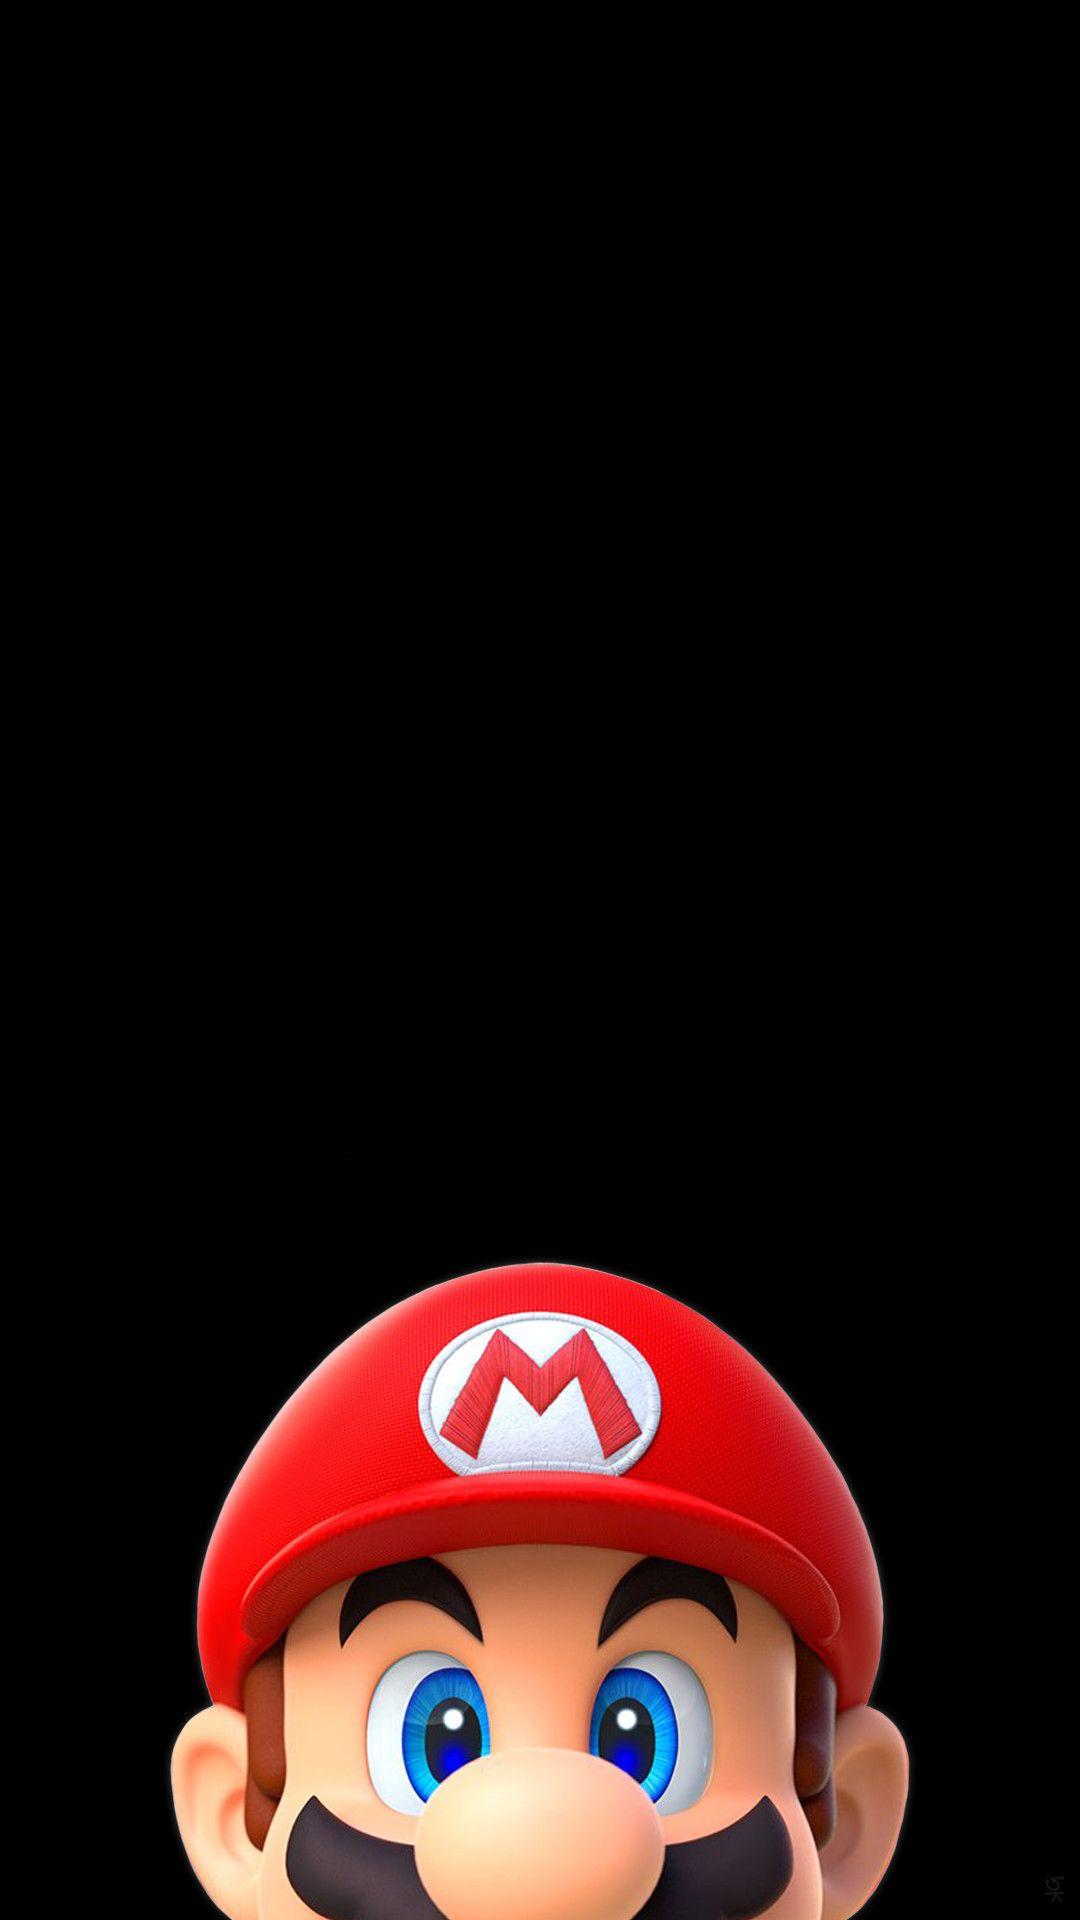 Mario iPhone Wallpaper. Game wallpaper iphone, Super mario art, Super mario